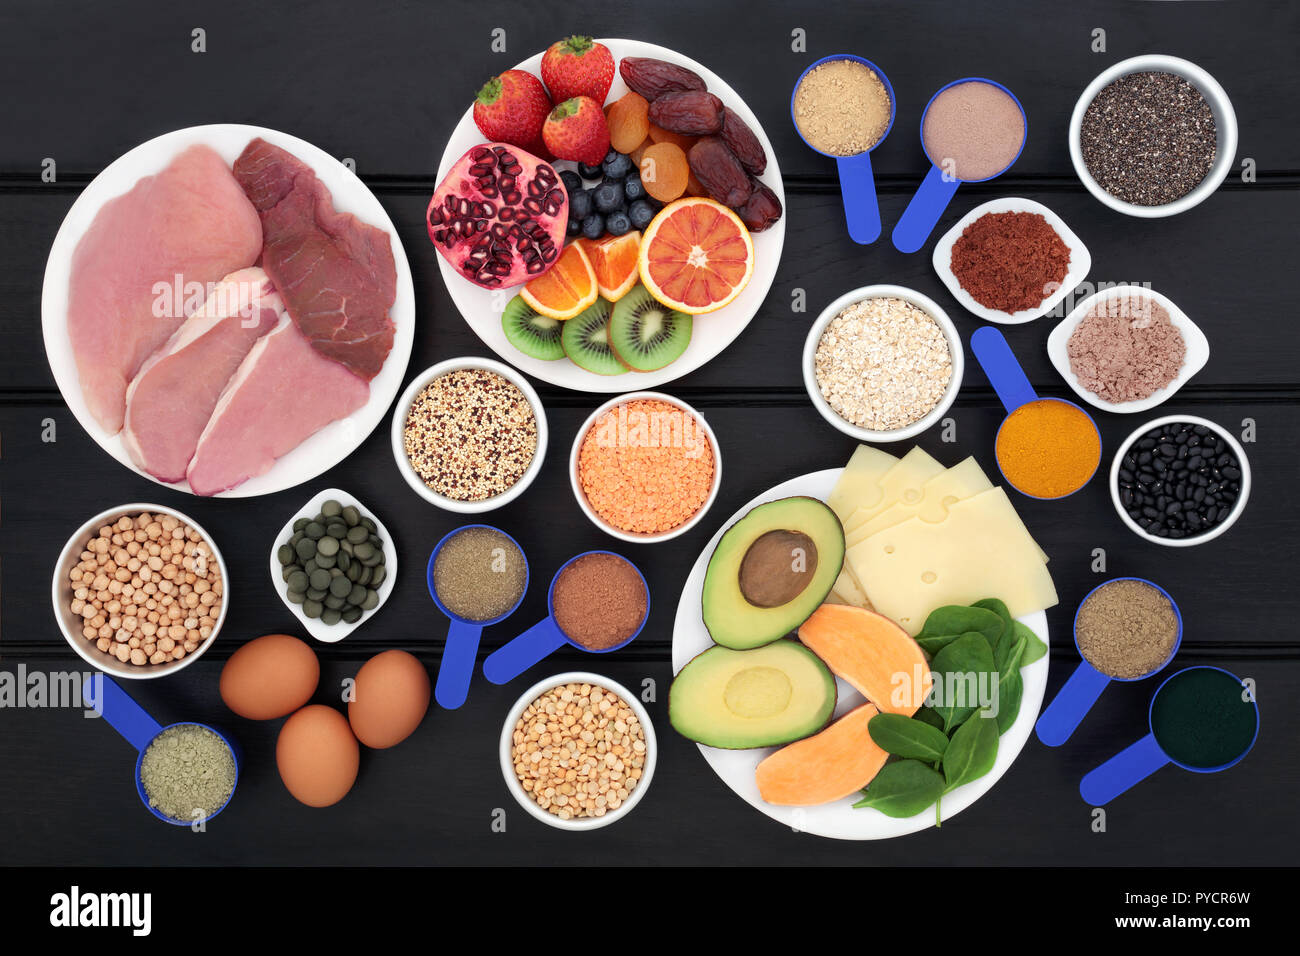 Nourriture santé pour les culturistes en protéines tels que la viande, les produits laitiers, complément alimentaire pour les poudres, comprimés chlorella, grains, céréales, fruits, légumes & Banque D'Images